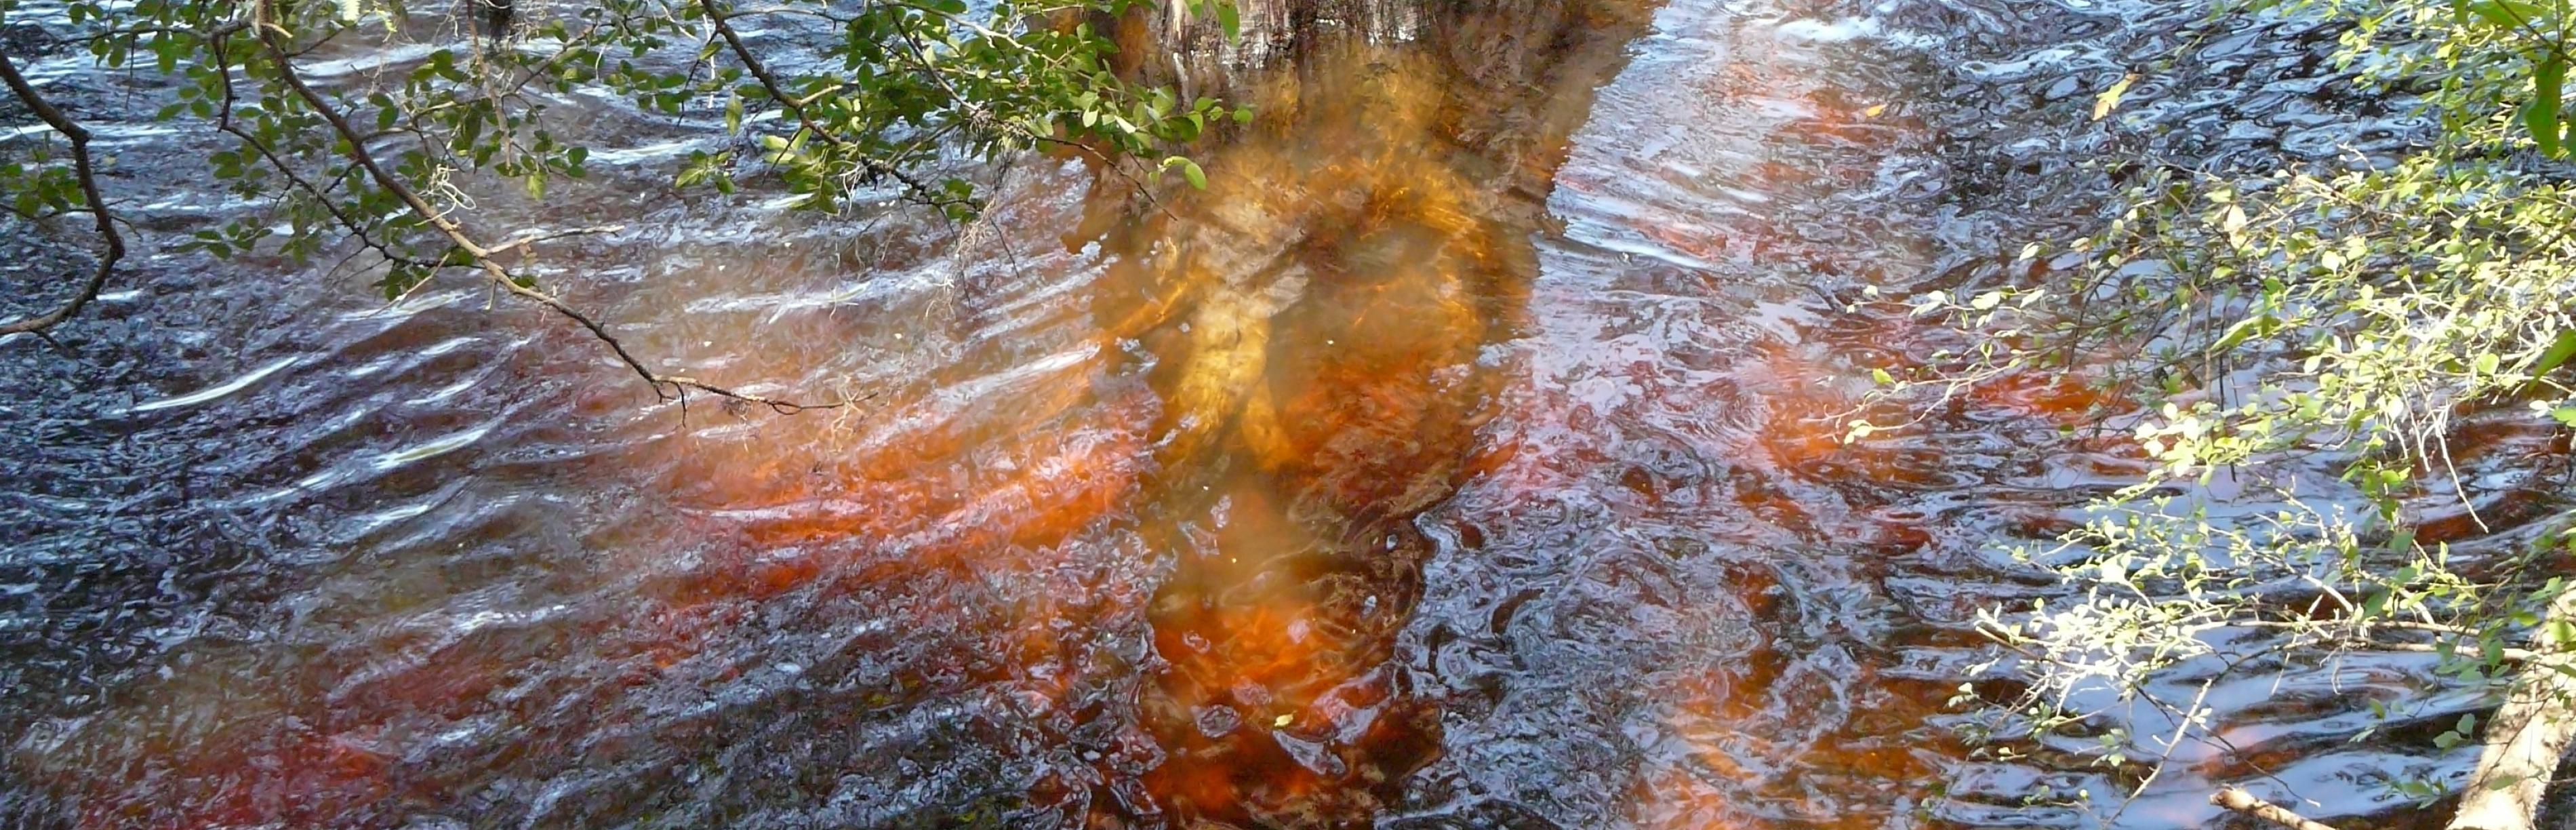 Dunkelbraune Gerbsäure bildet sich im Fluss Blackwater um einen Zypressenbaum im Hart Springs County Park in Florida.